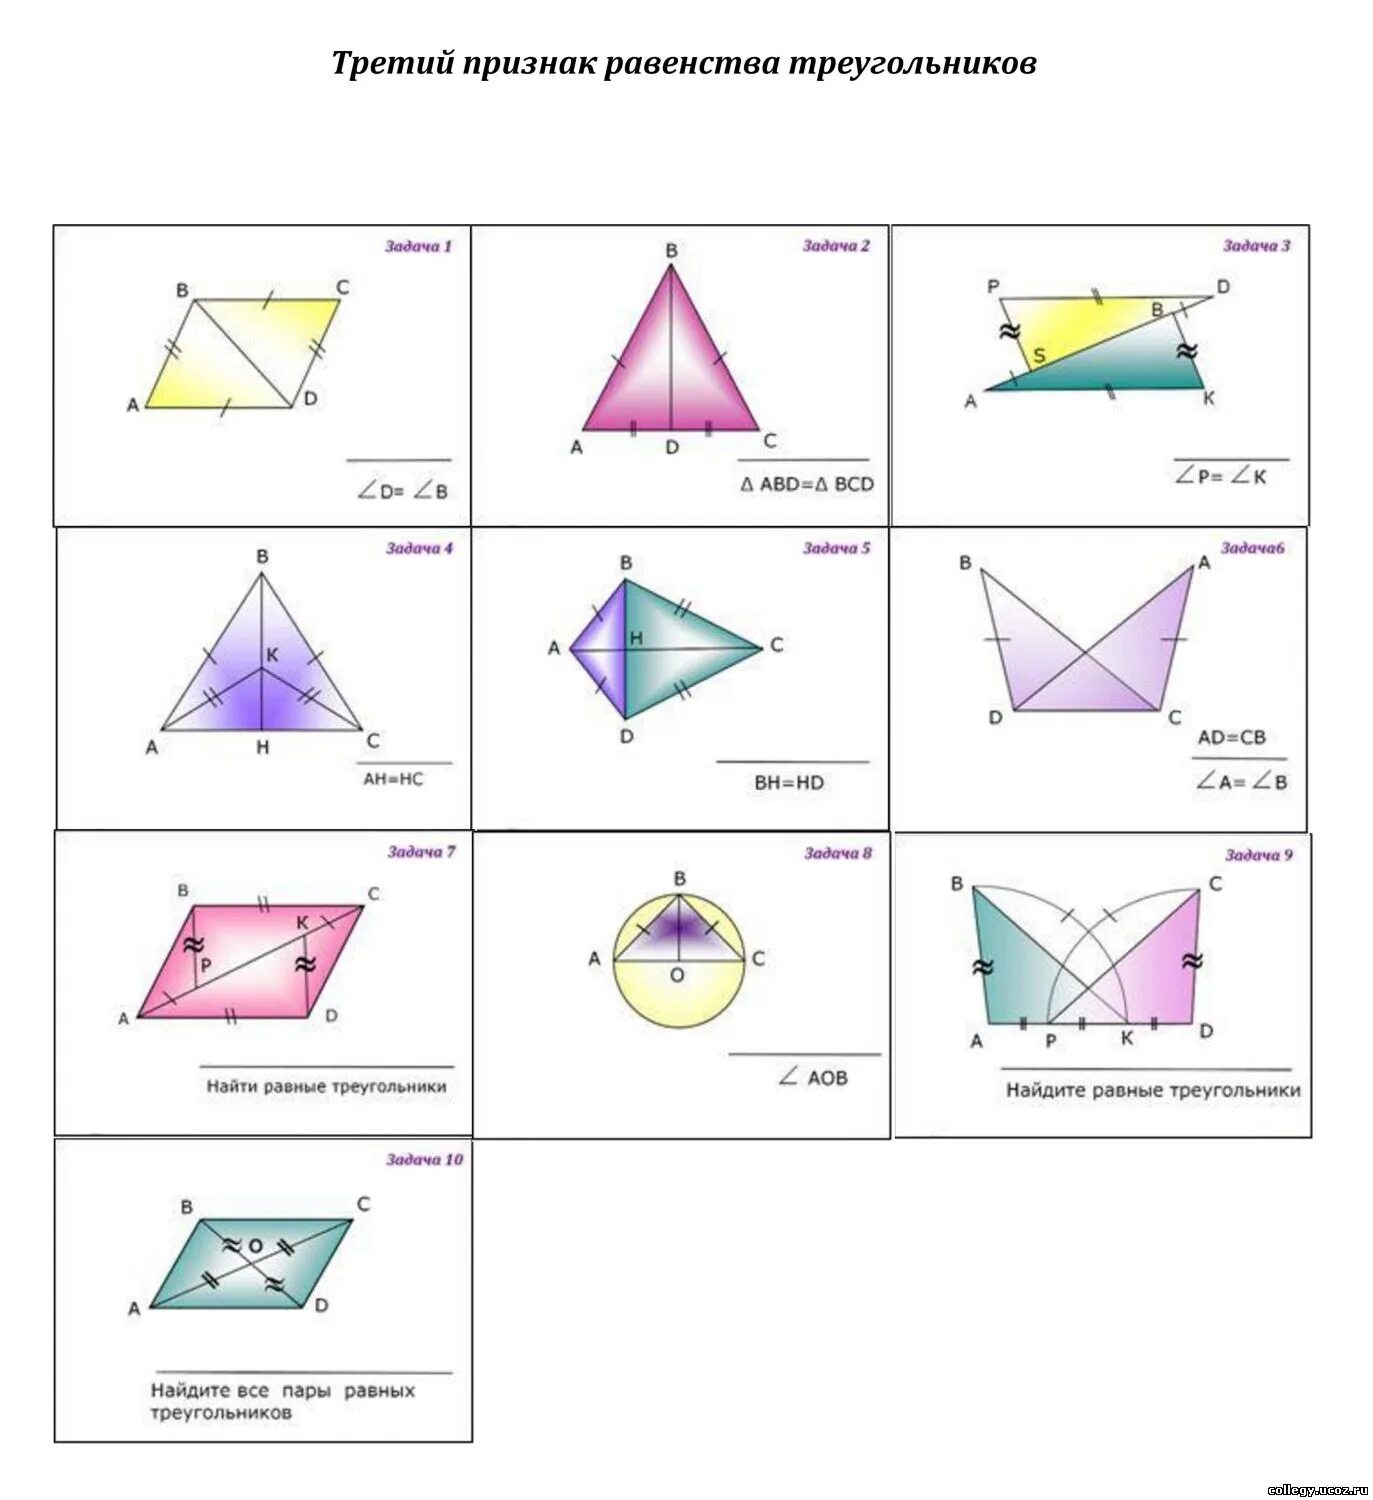 Первое равенство треугольников задачи. Третий признак равенства треугольников задачи на готовых чертежах. Третий признак равенства треугольников на готовых чертежах. Признаки равенства треугольников задачи по готовым чертежам. Признаки равенства треугольников по готовым чертежам.